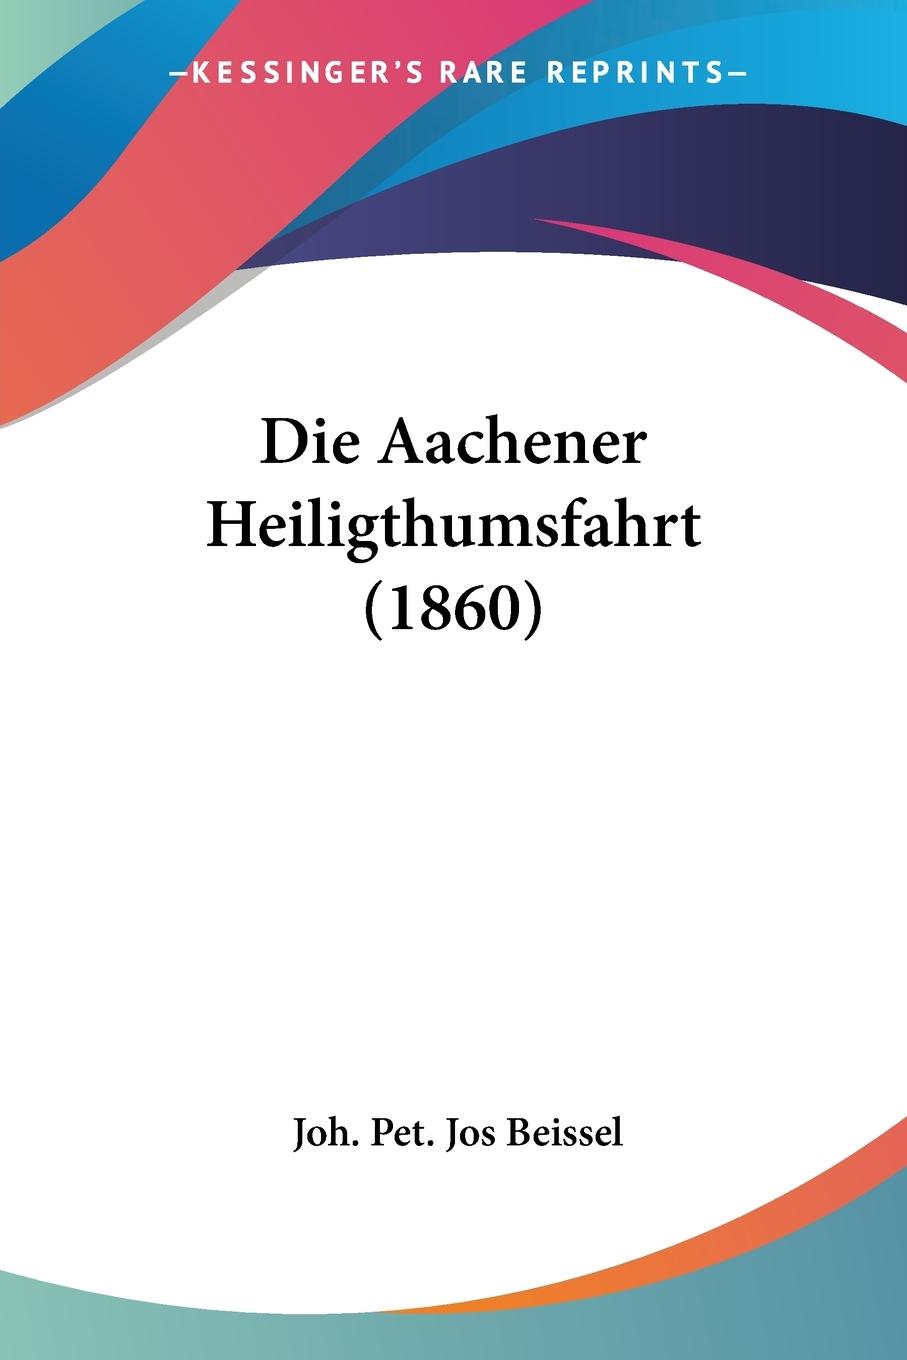 Die Aachener Heiligthumsfahrt (1860) - Beissel, Joh. Pet. Jos